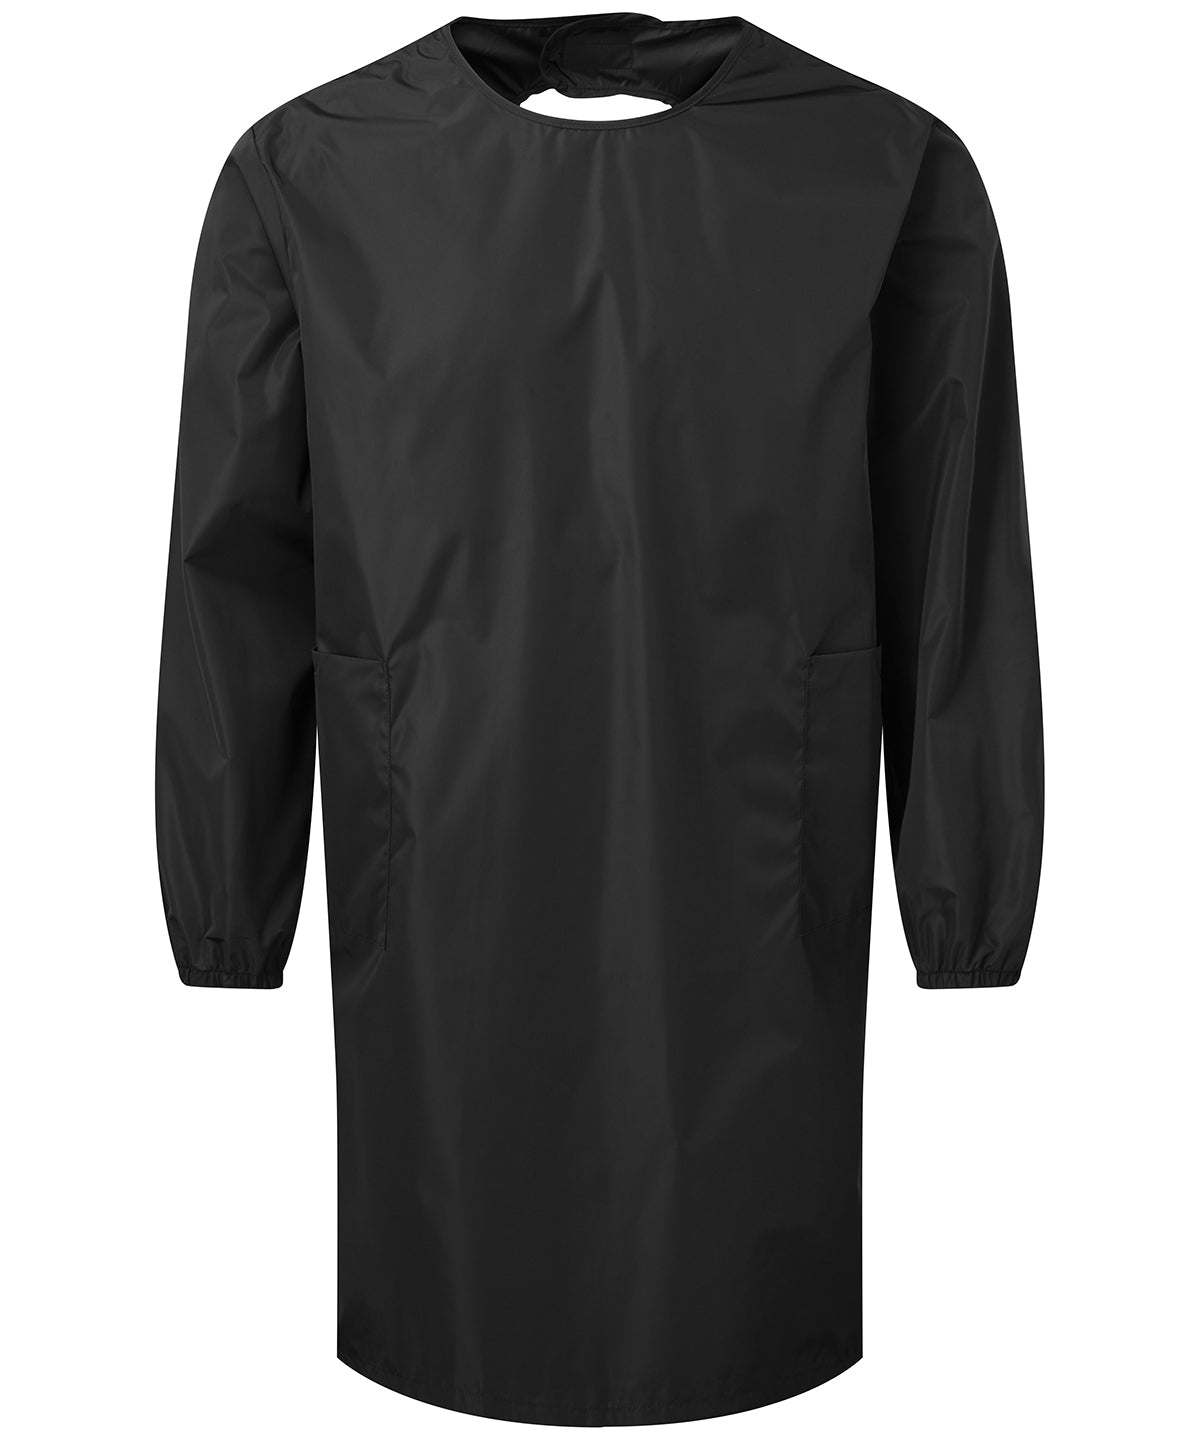 Kjólar - All-purpose Waterproof Gown